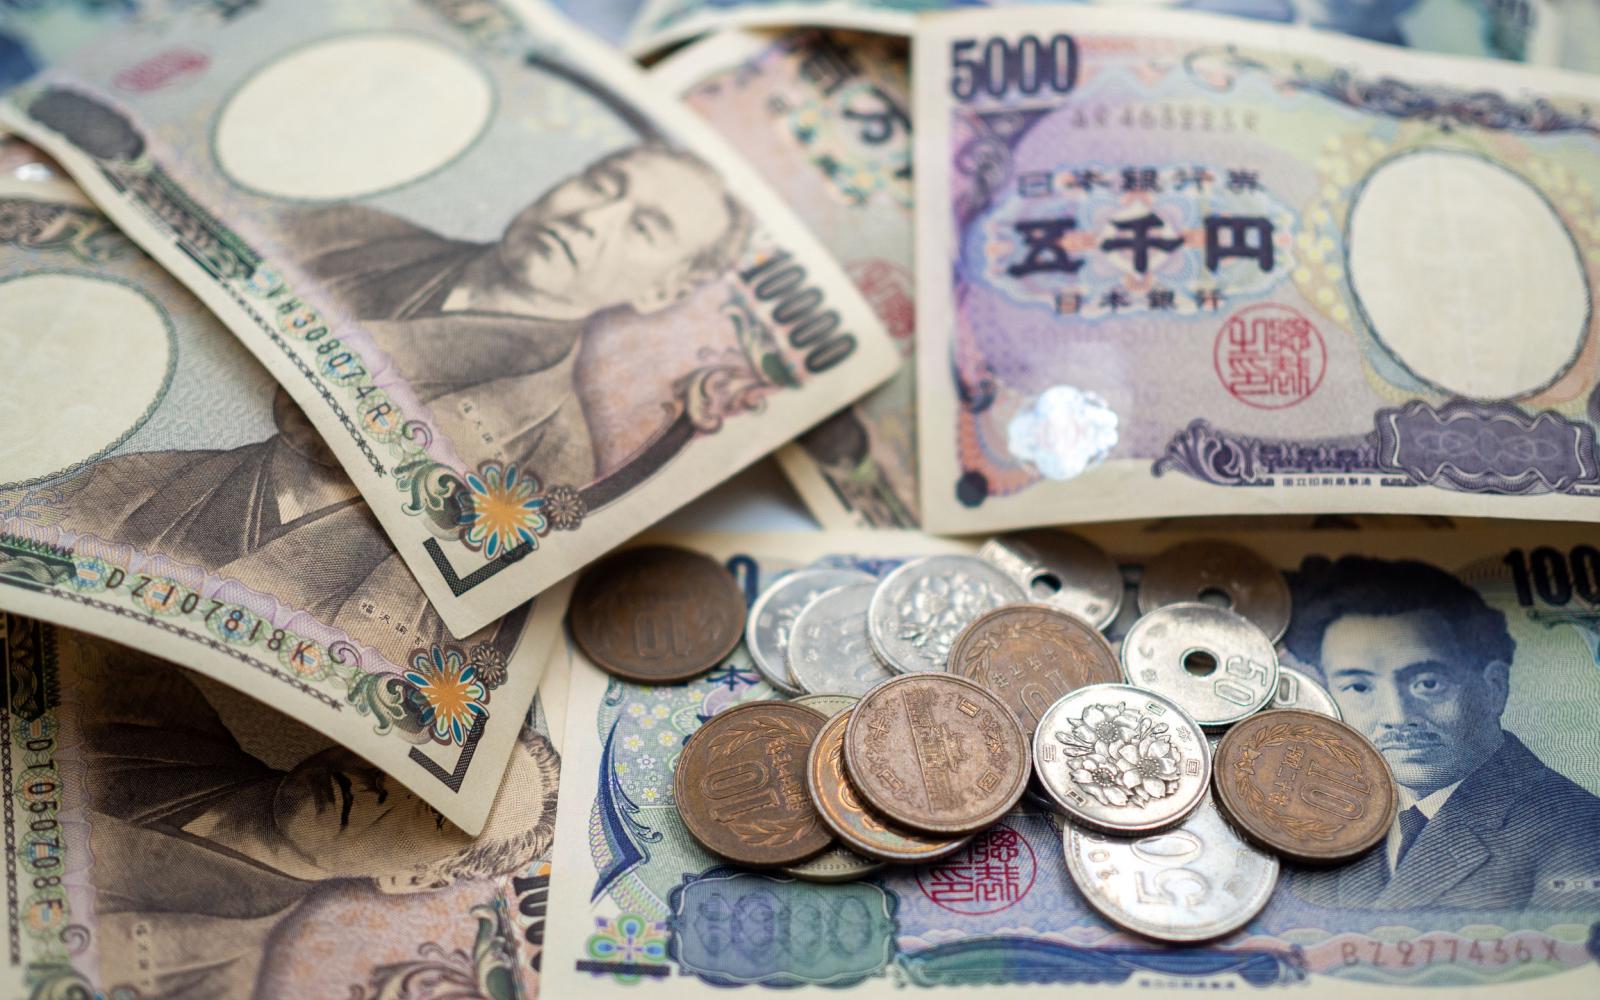 Банкноты японской иены (JPY) &mdash; денежной единицы Японии

